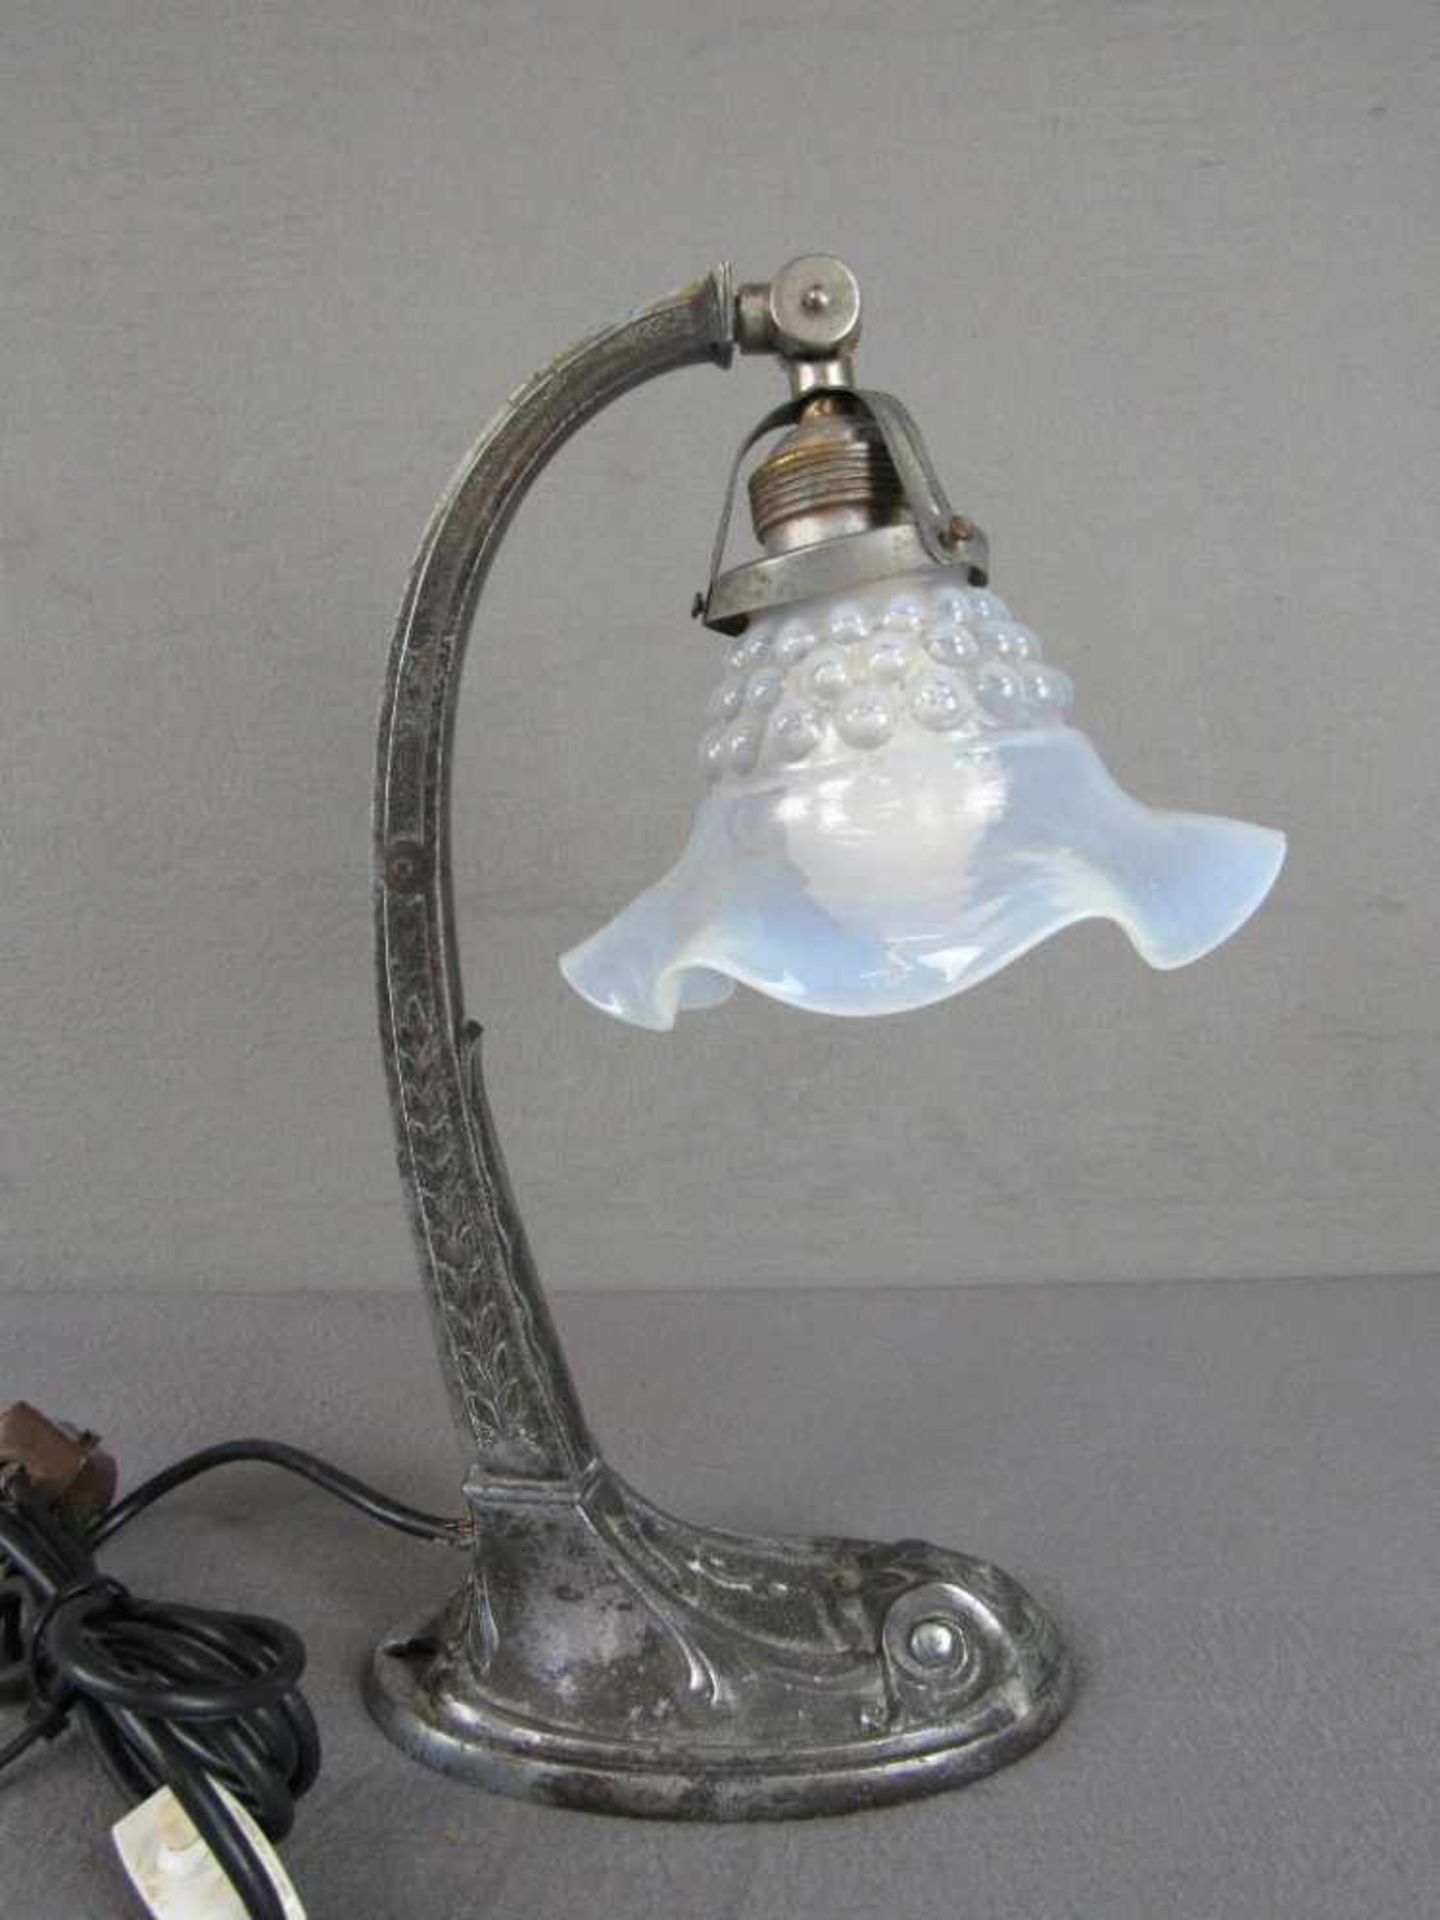 Tischlampe bzw Wandlampe Jugendstil original Beschirmung 35cm hoch- - -20.00 % buyer's premium on